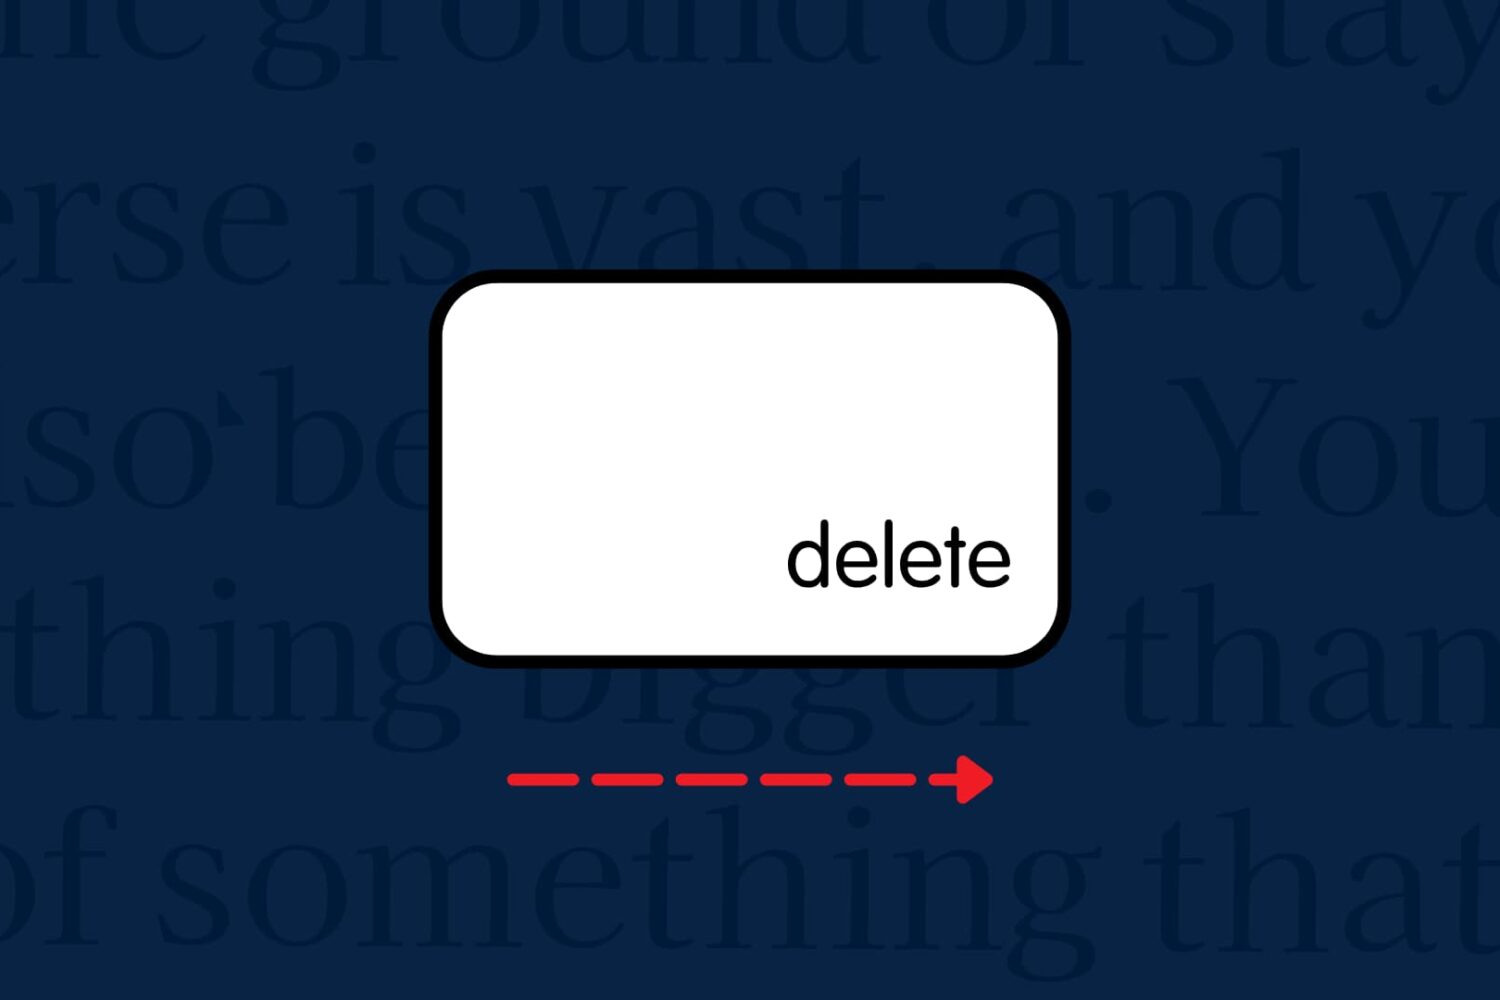 Keyboard delete key to show forward delete text on Mac